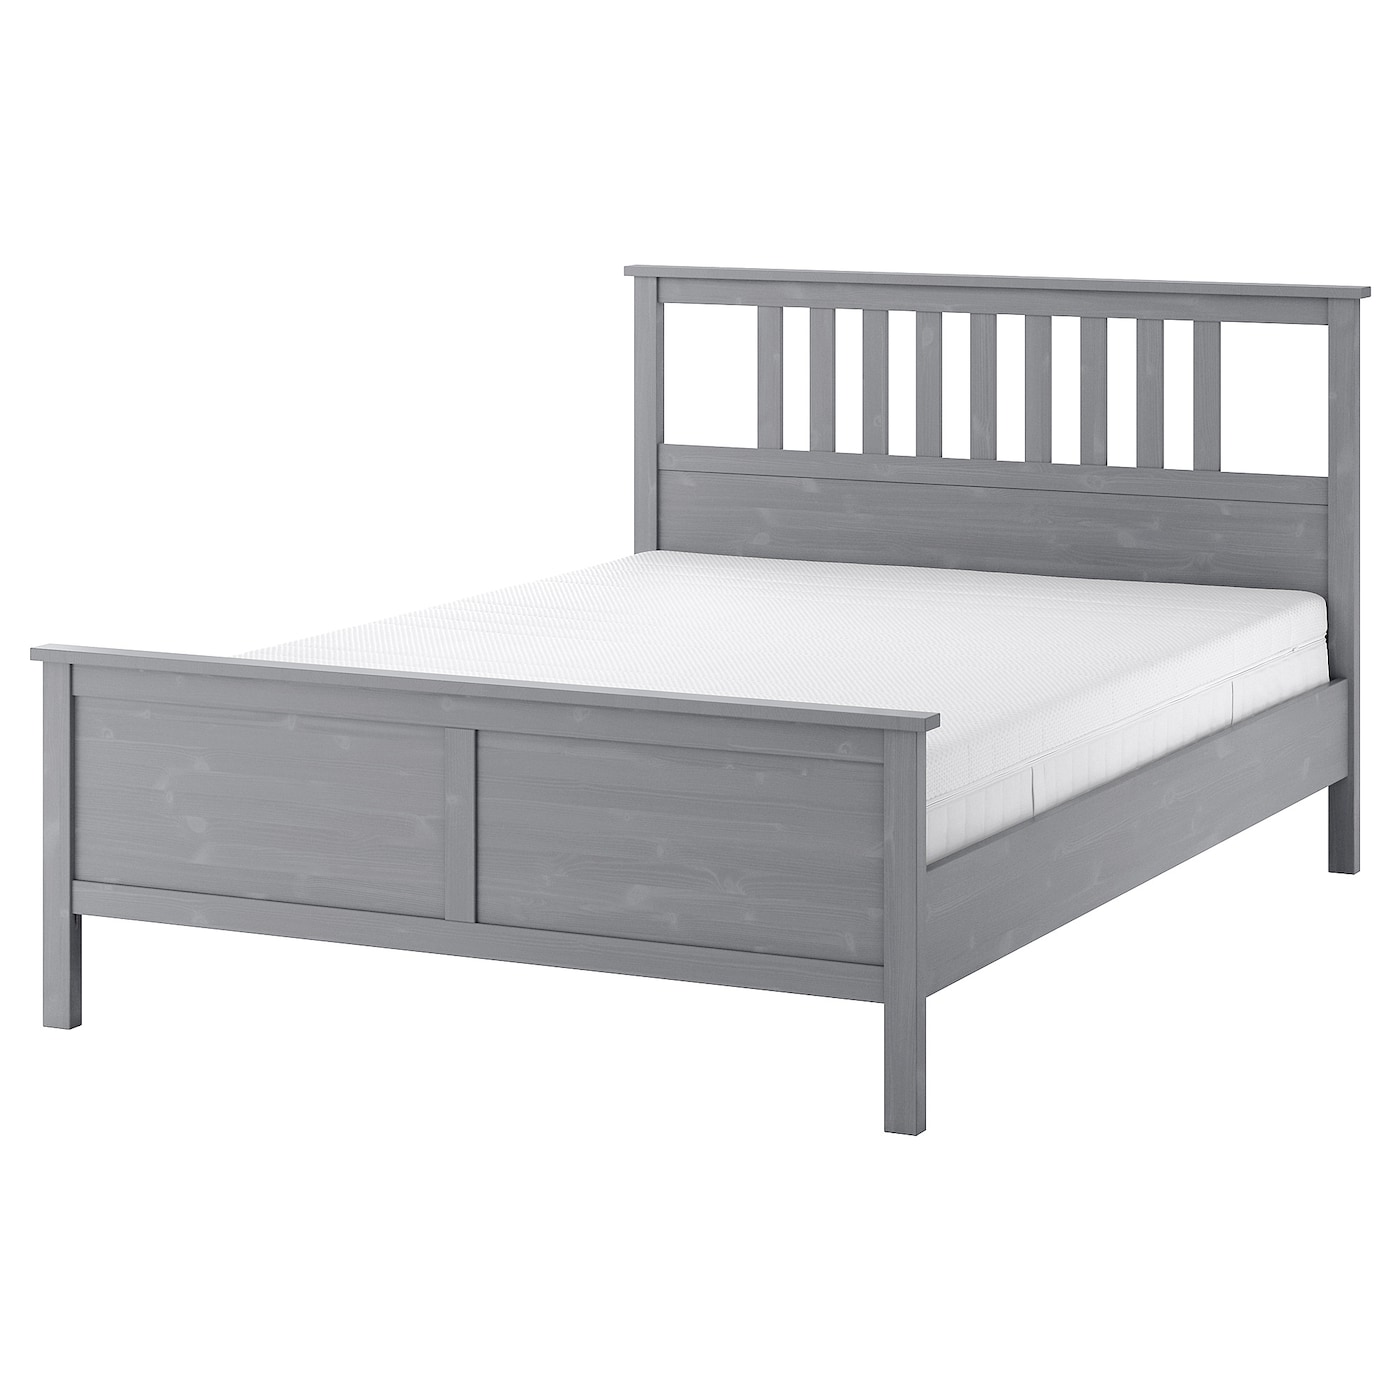 Кровать - IKEA HEMNES, 200х140 см, матрас средней жесткости, серый, ХЕМНЕС ИКЕА